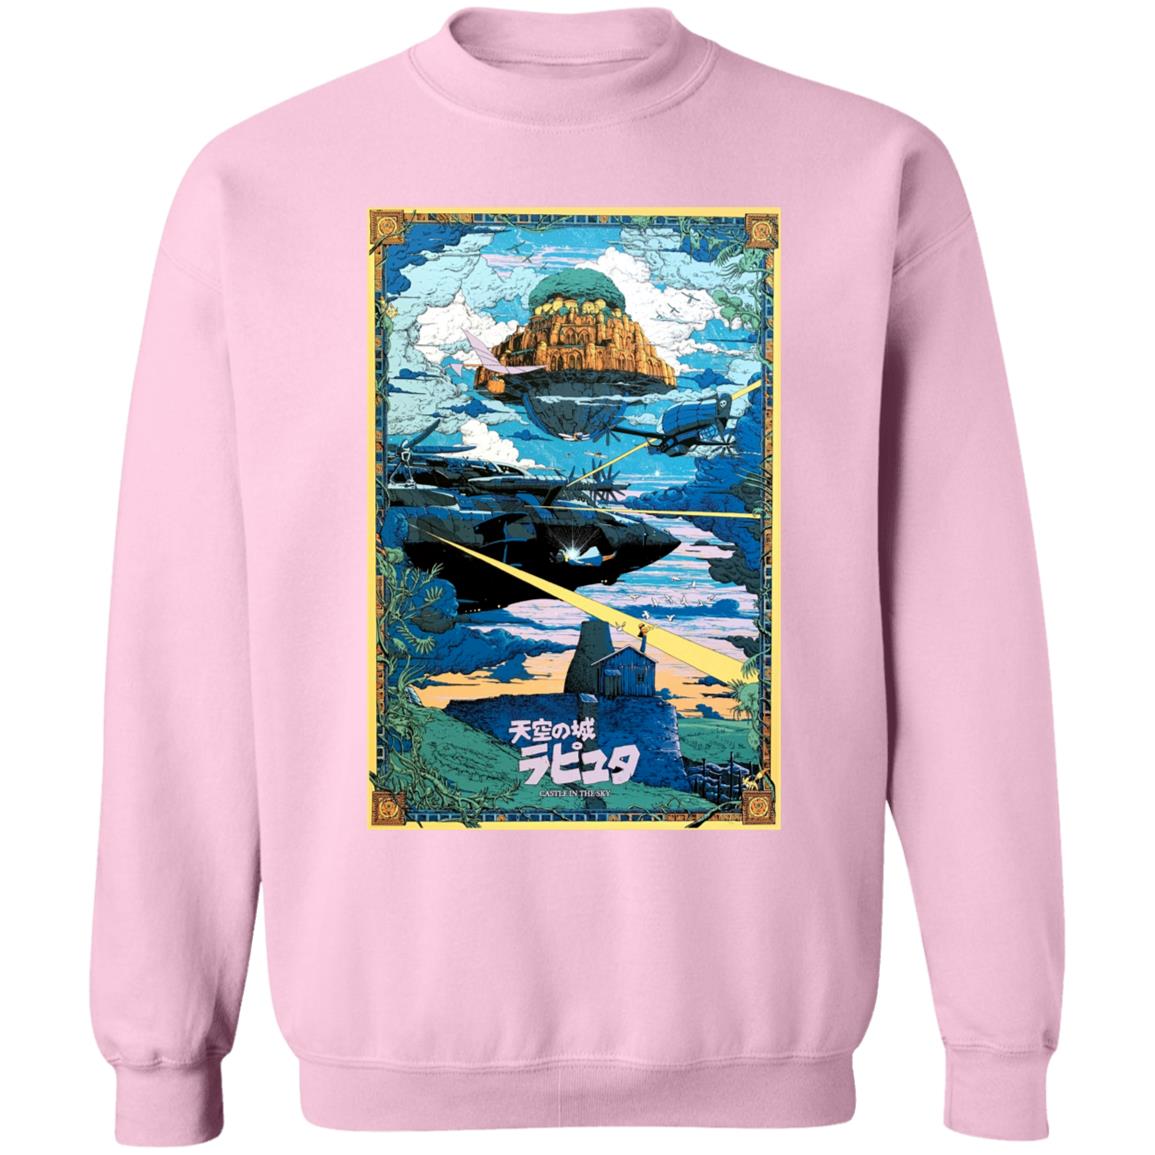 Laputa: Castle In The Sky – War Sweatshirt